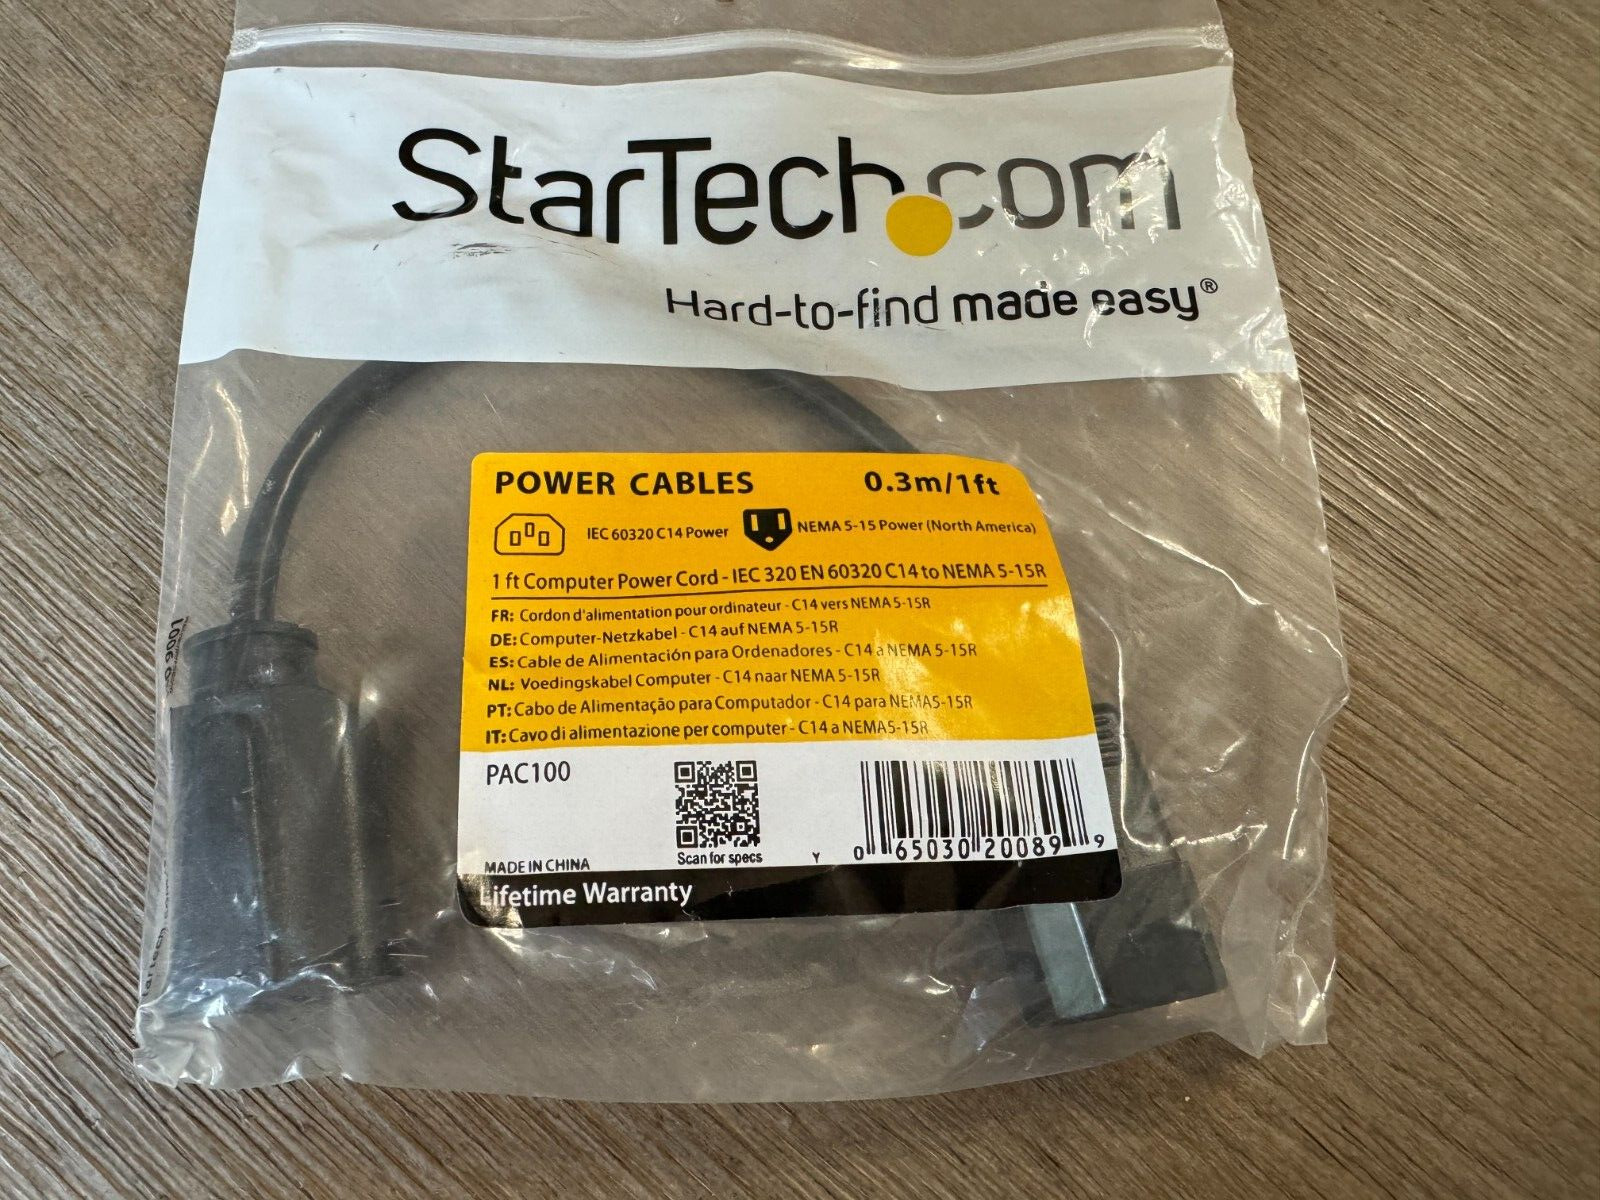 StarTech.com Power Cables 0.3m/1 ft